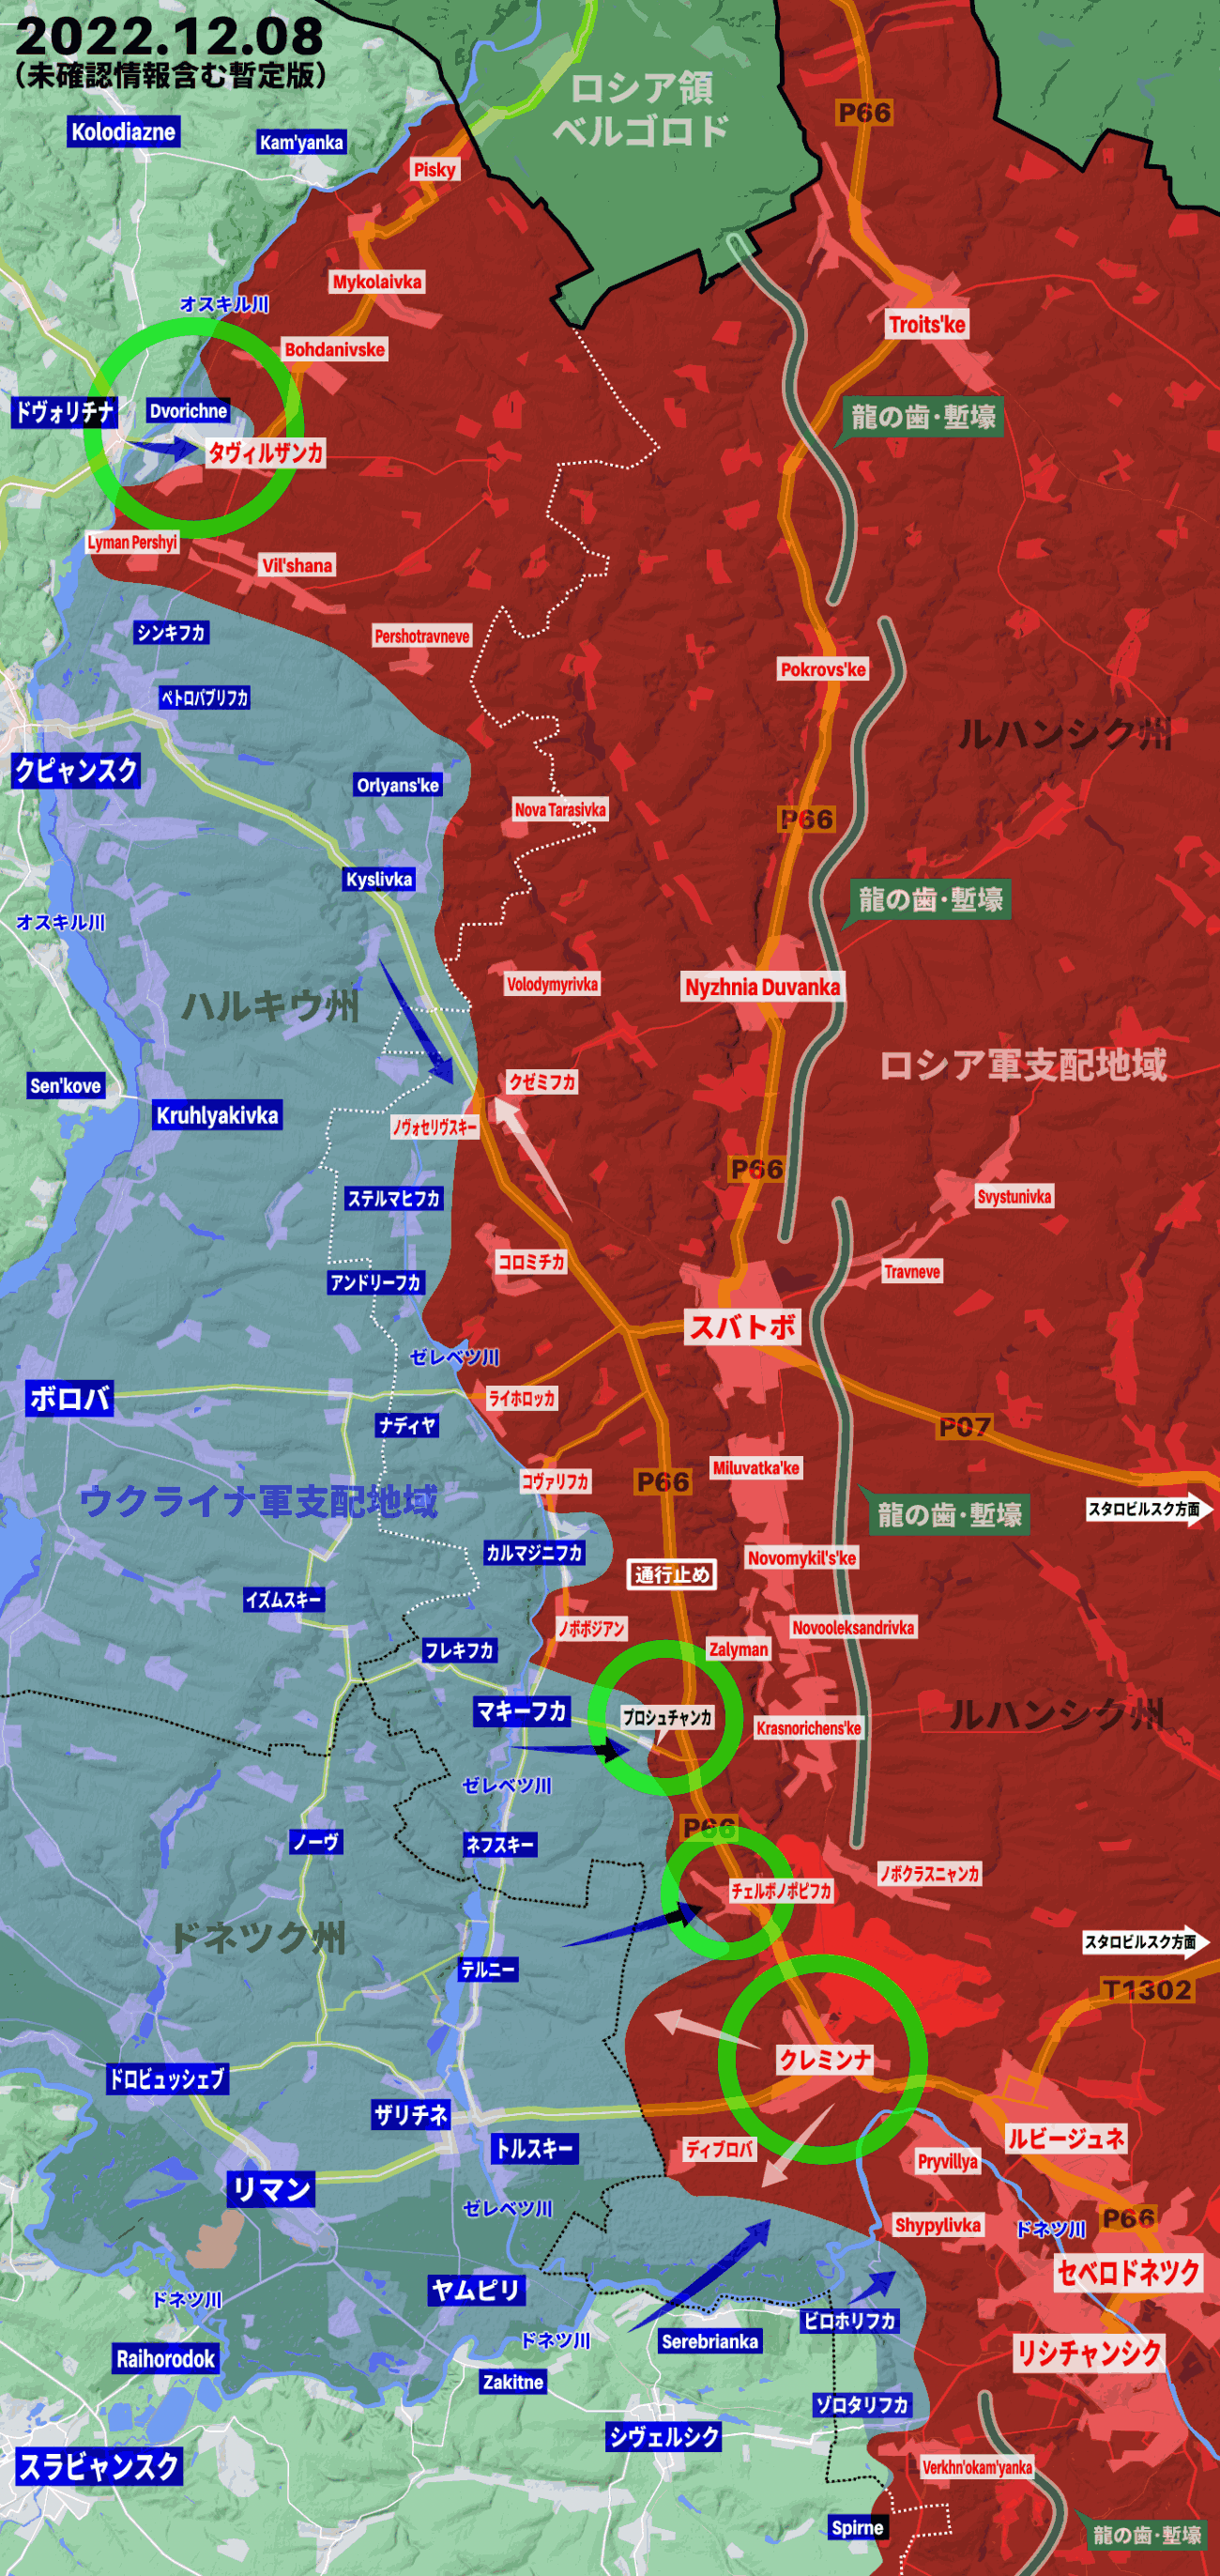 ウクライナ軍、スバトボとクレミンナを結ぶ幹線道路に迫っている可能性